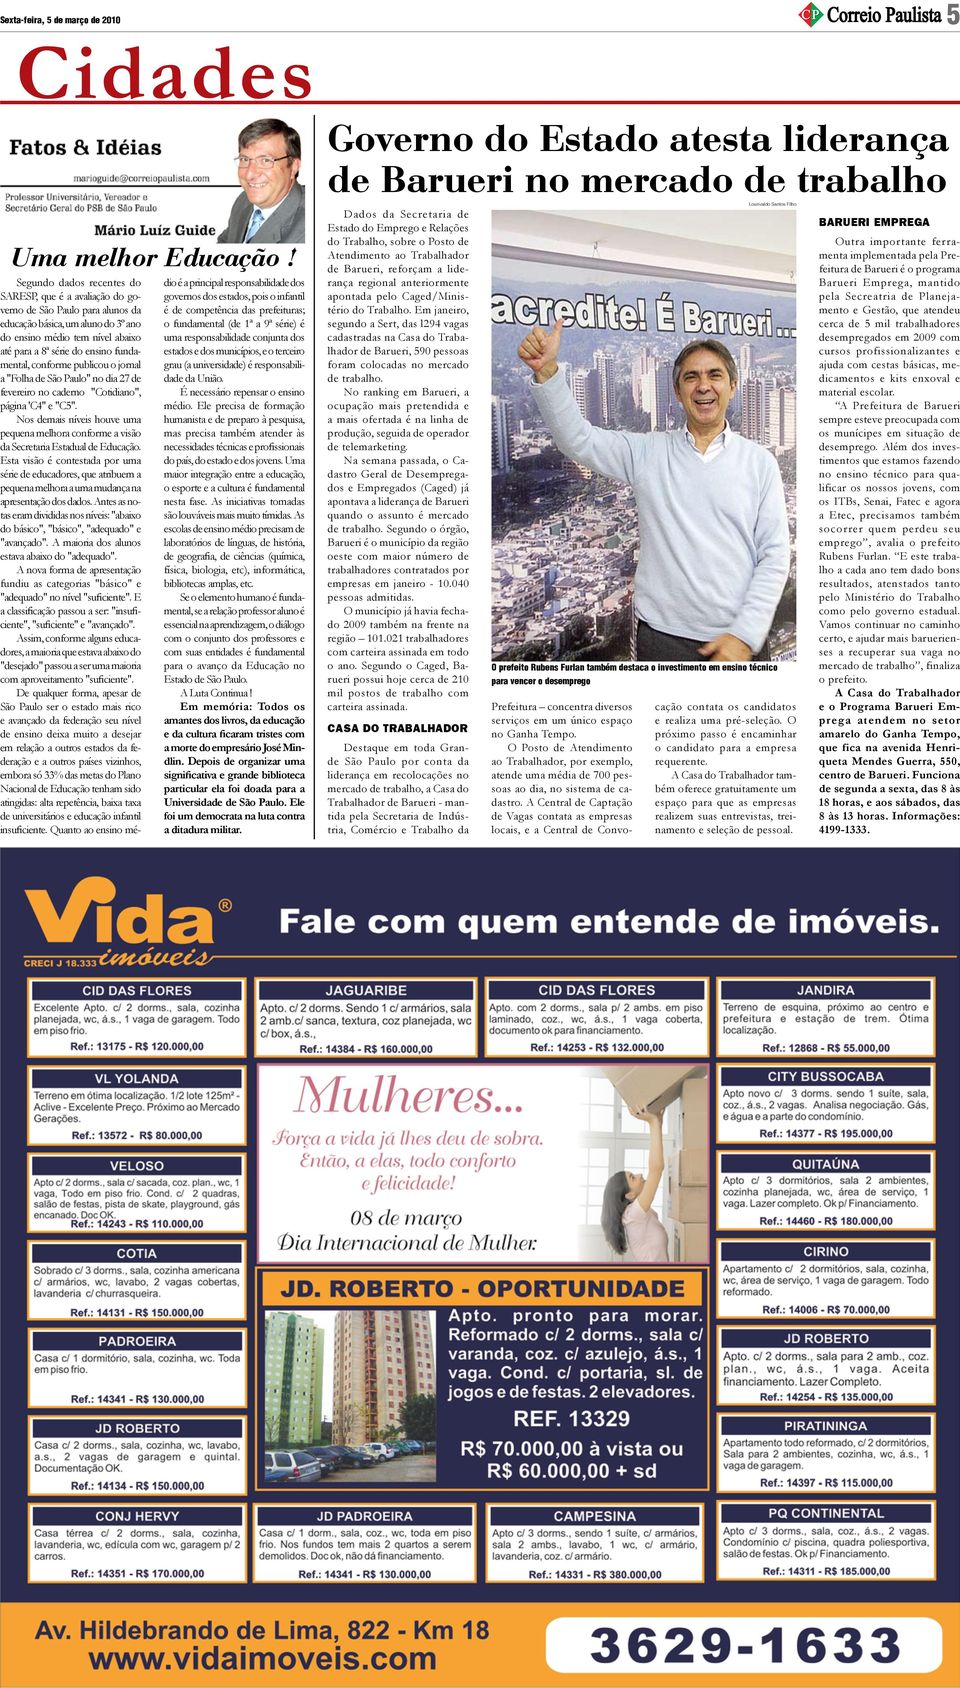 fundamental, conforme publicou o jornal a "Folha de São Paulo" no dia 27 de fevereiro no caderno "Cotidiano", página 'C4" e "C5".